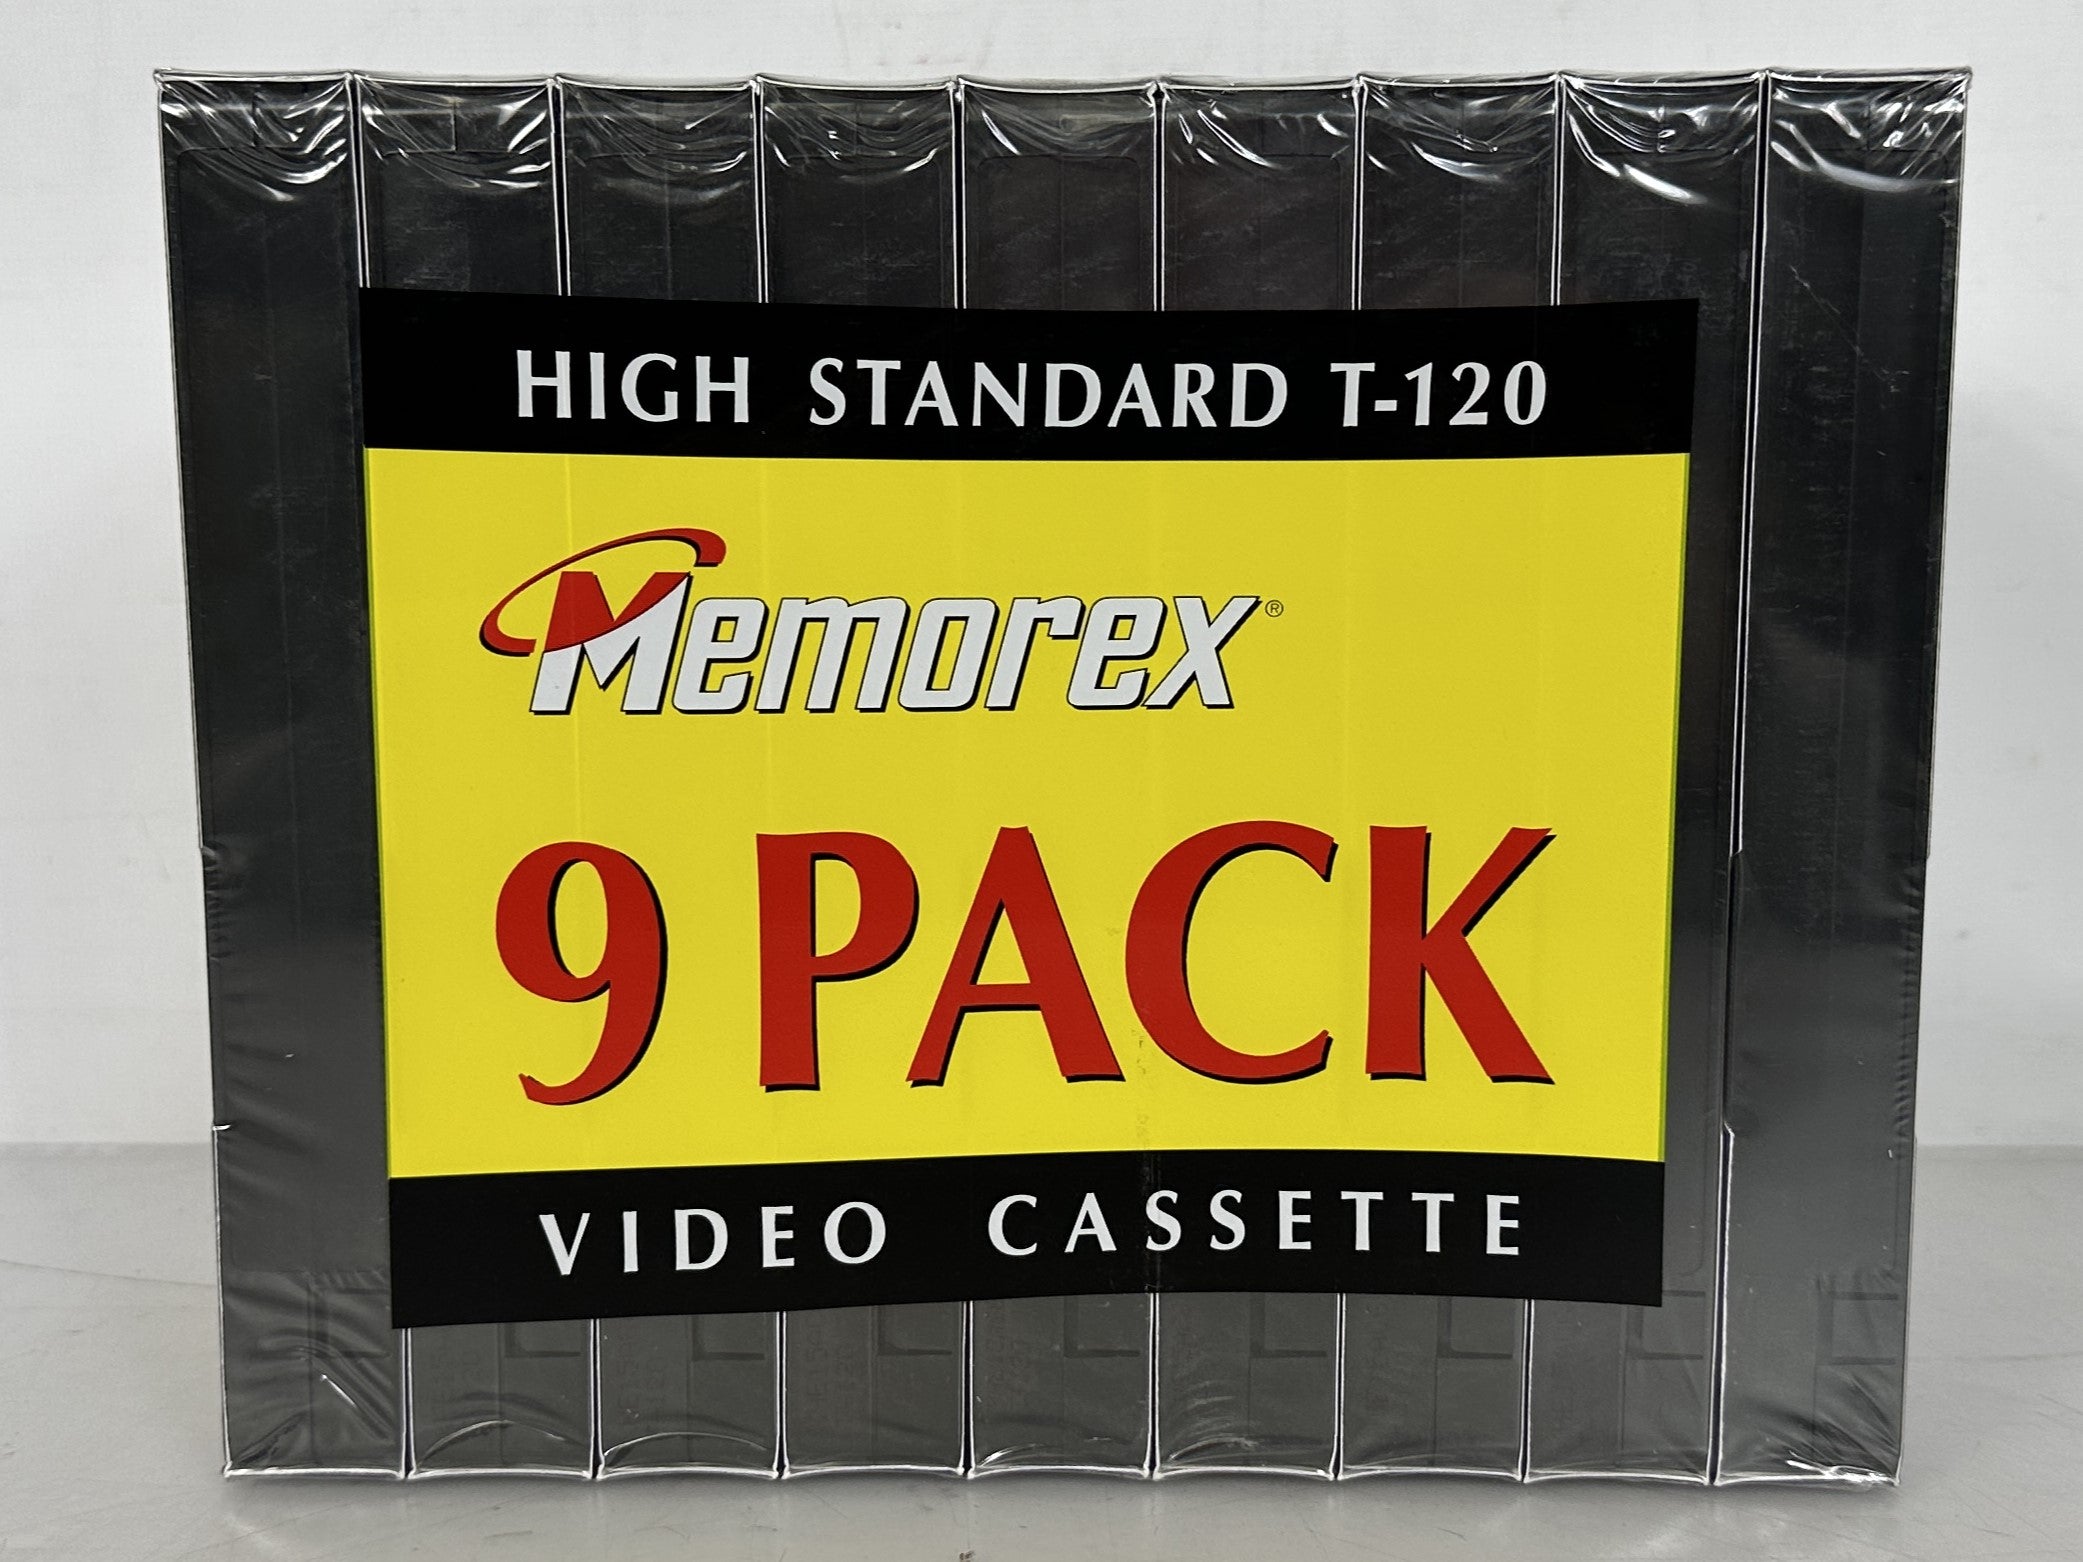 9-Pk. Memorex High Standard T-120 6-Hour Video Cassette